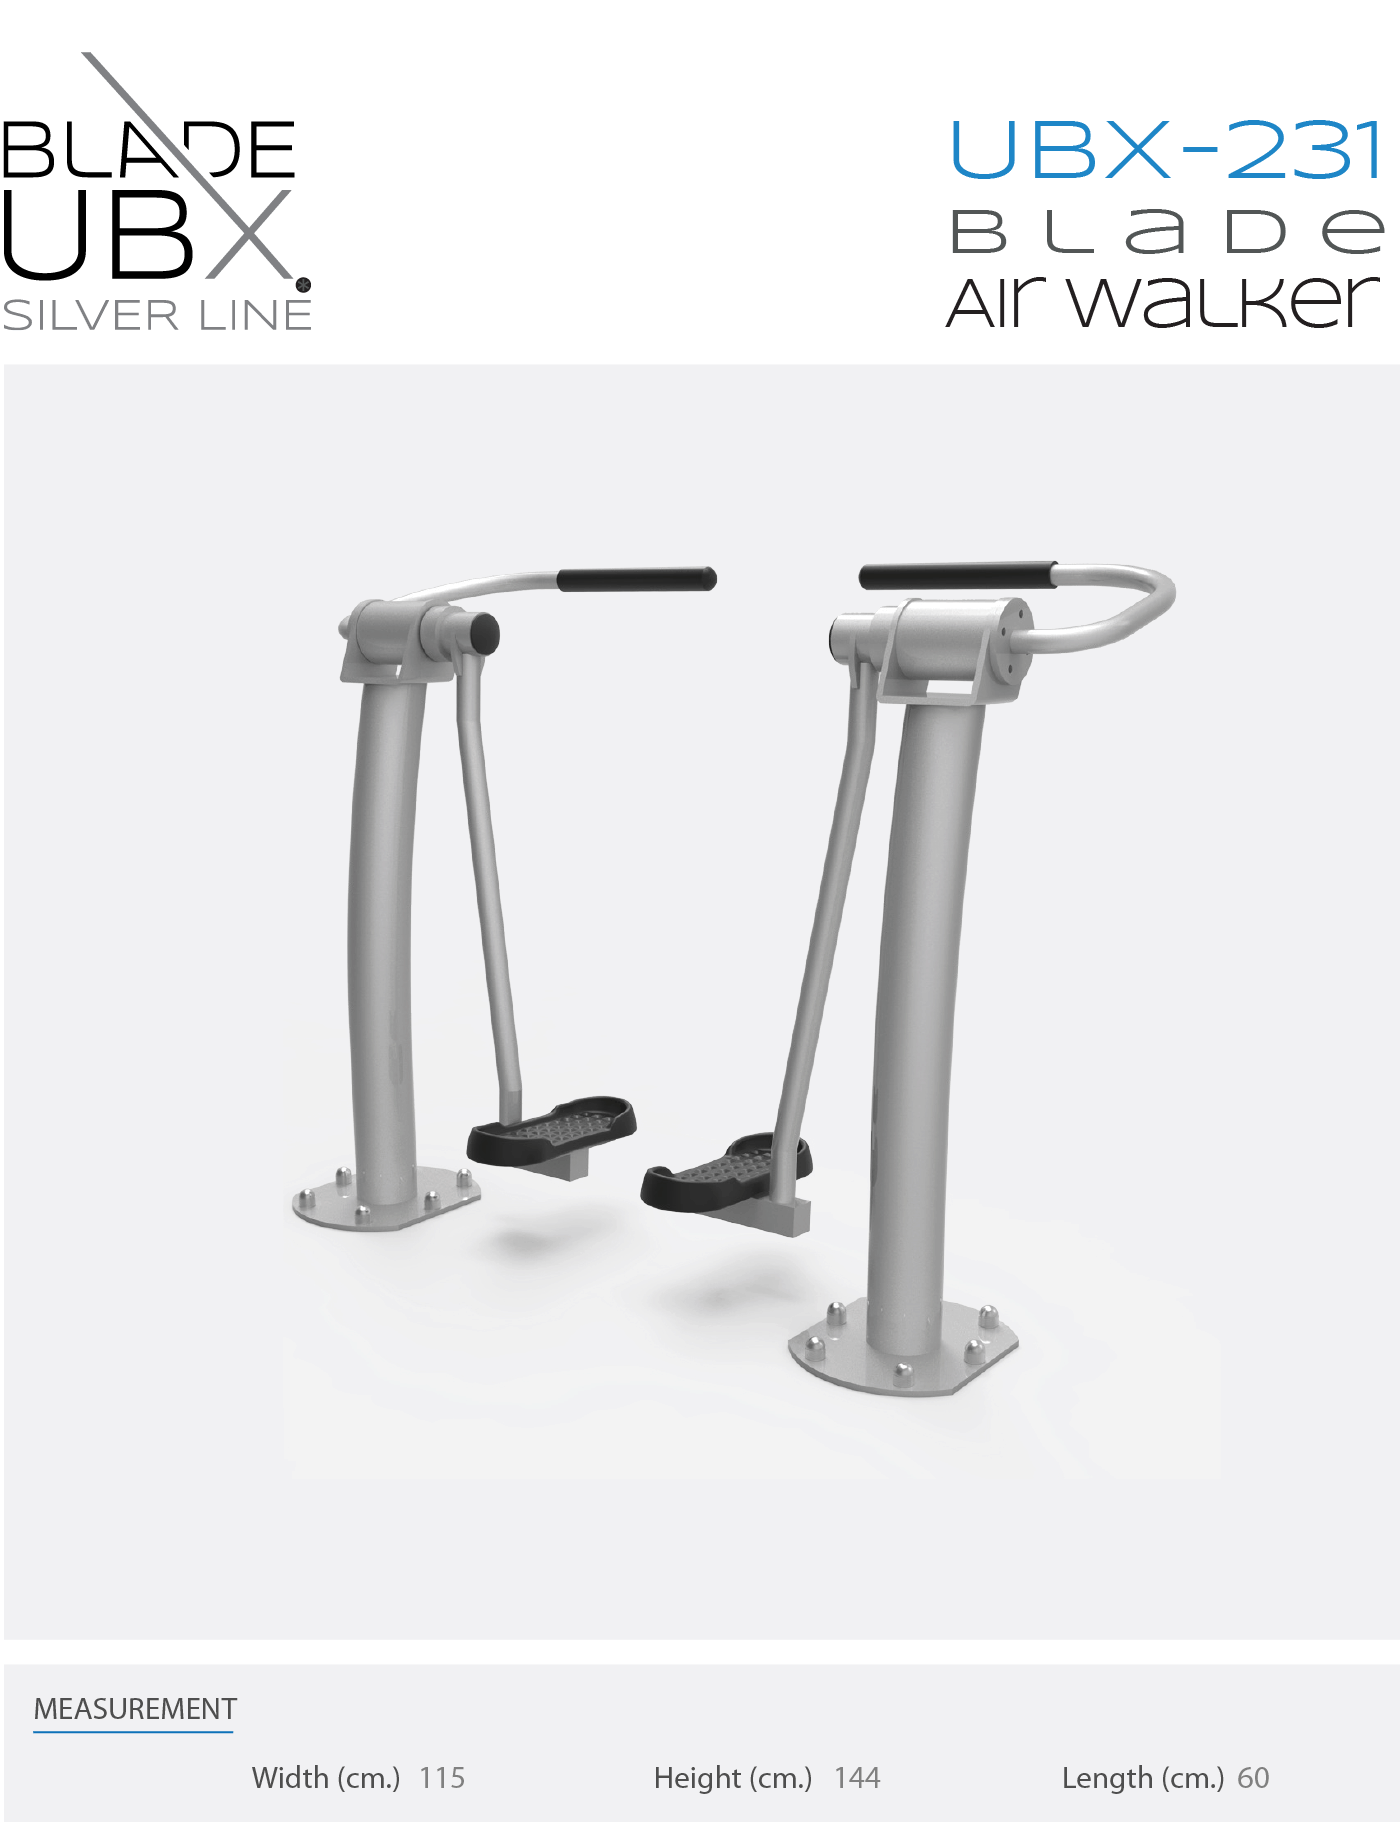 ubx-231 blade air walker - אורבניקס - מתקן כושר - אייר וולקר